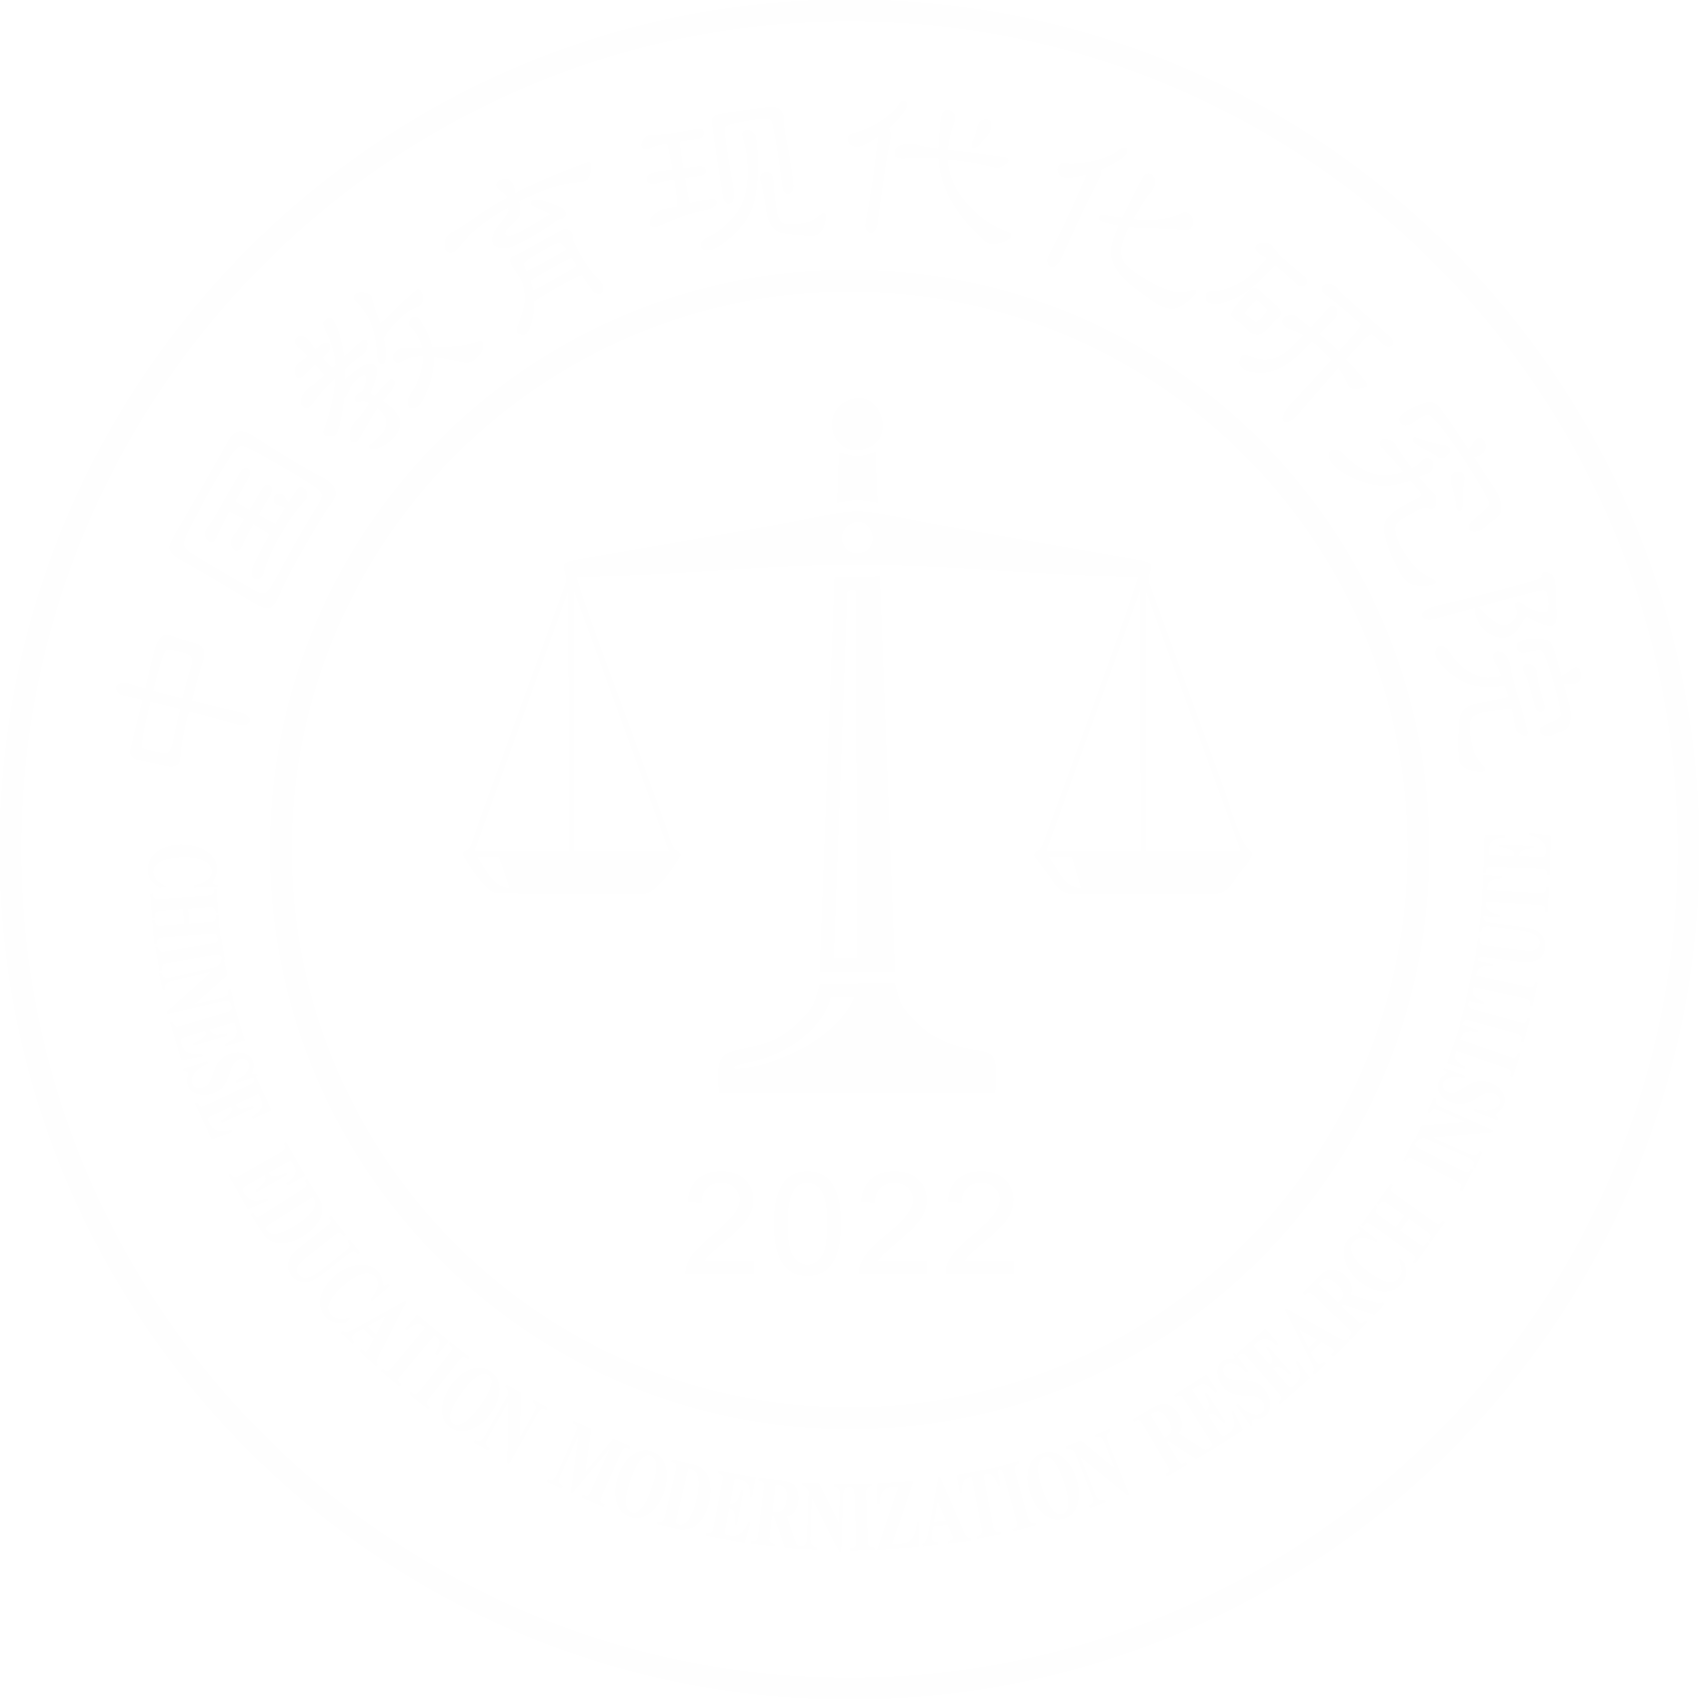 浙江省教育现代化研究与评价中心